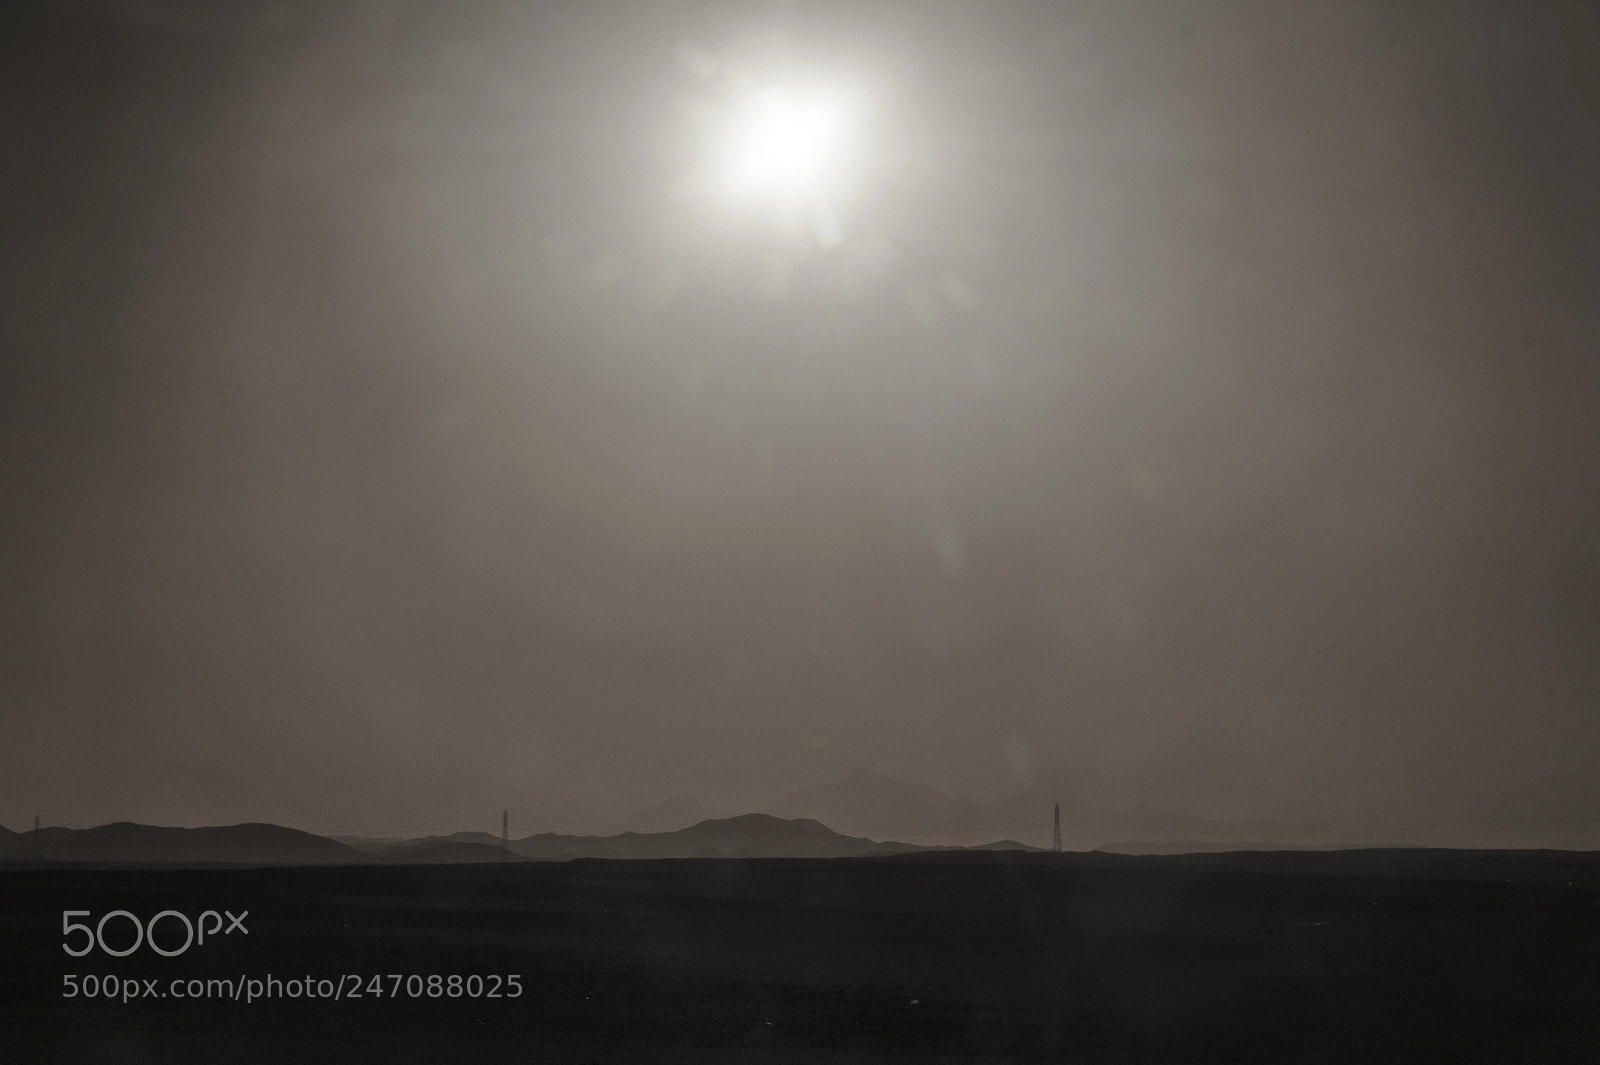 Nikon D700 sample photo. Wan sun in desert photography